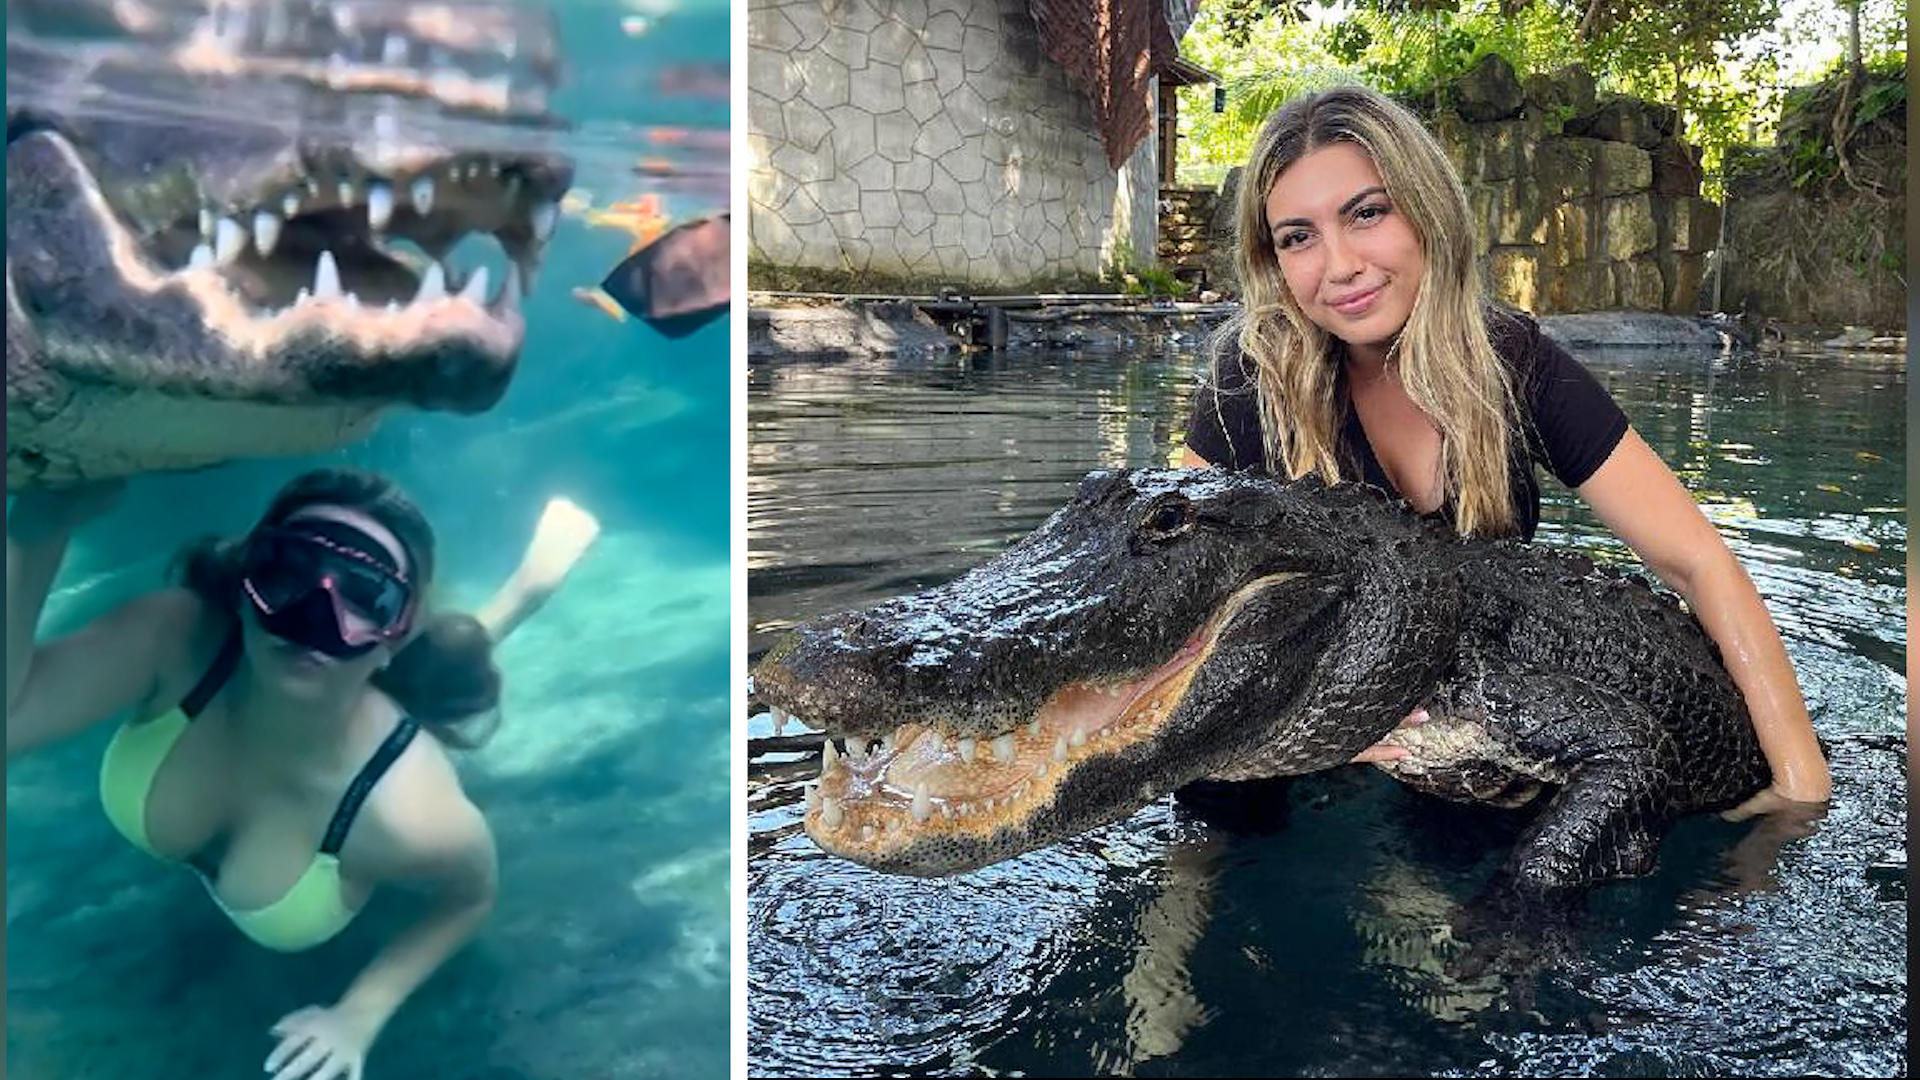 Ist die irre?! Frau plantscht mit XXL-Alligator Die Schöne und das Reptil